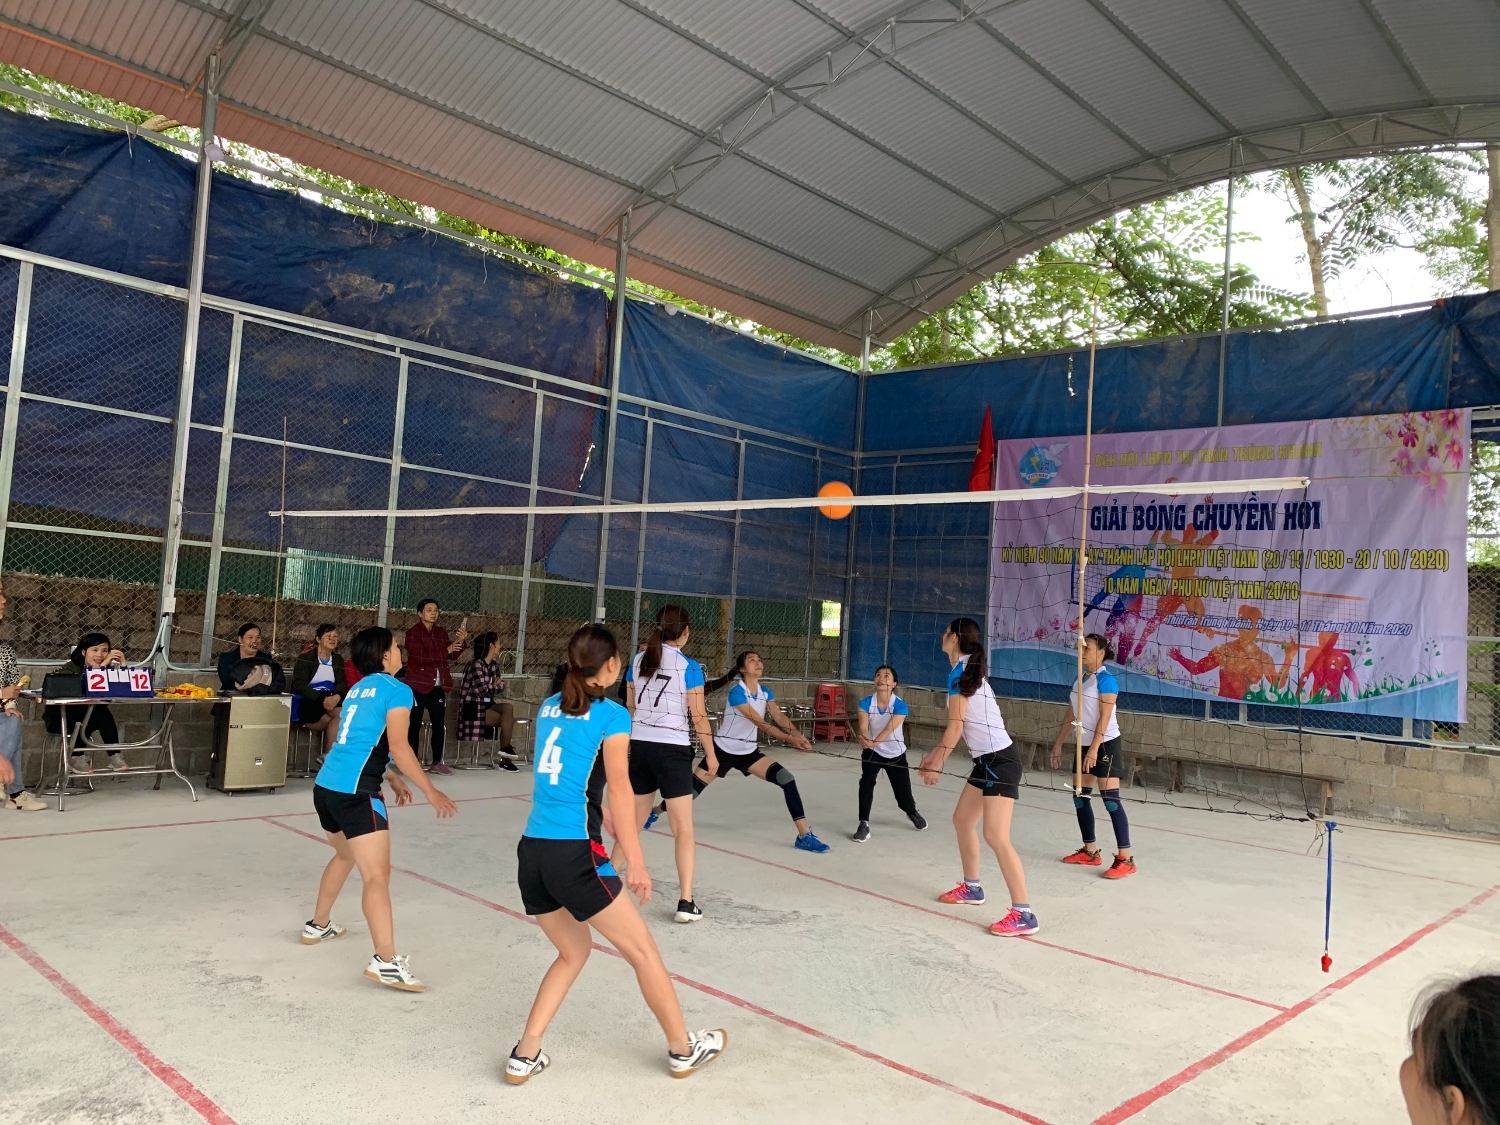 Phụ nữ Thị trấn Trùng Khánh tổ chức giải bóng chuyền hơi chào mừng 90 năm ngày thành lập Hội